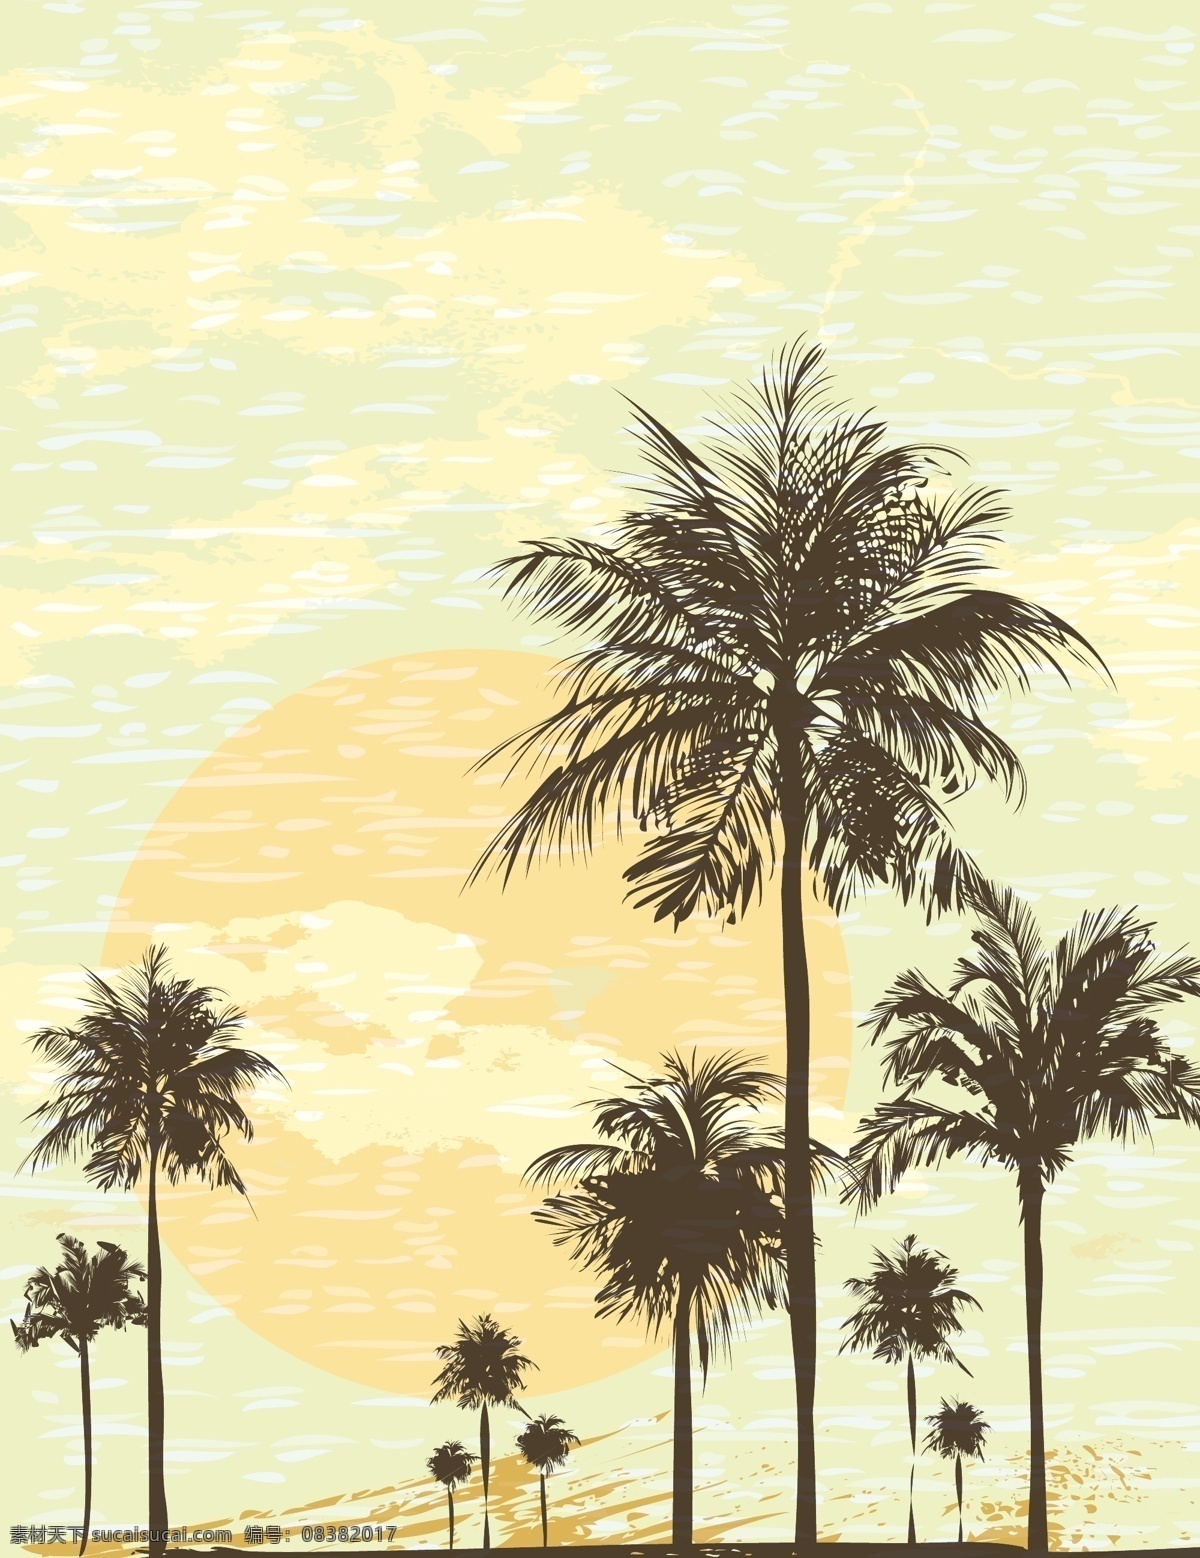 夏日 椰树 插画 矢量 模板下载 夏日海滩风景 沙滩背景 椰树插画 夏日主题插画 底纹边框 矢量素材 黄色